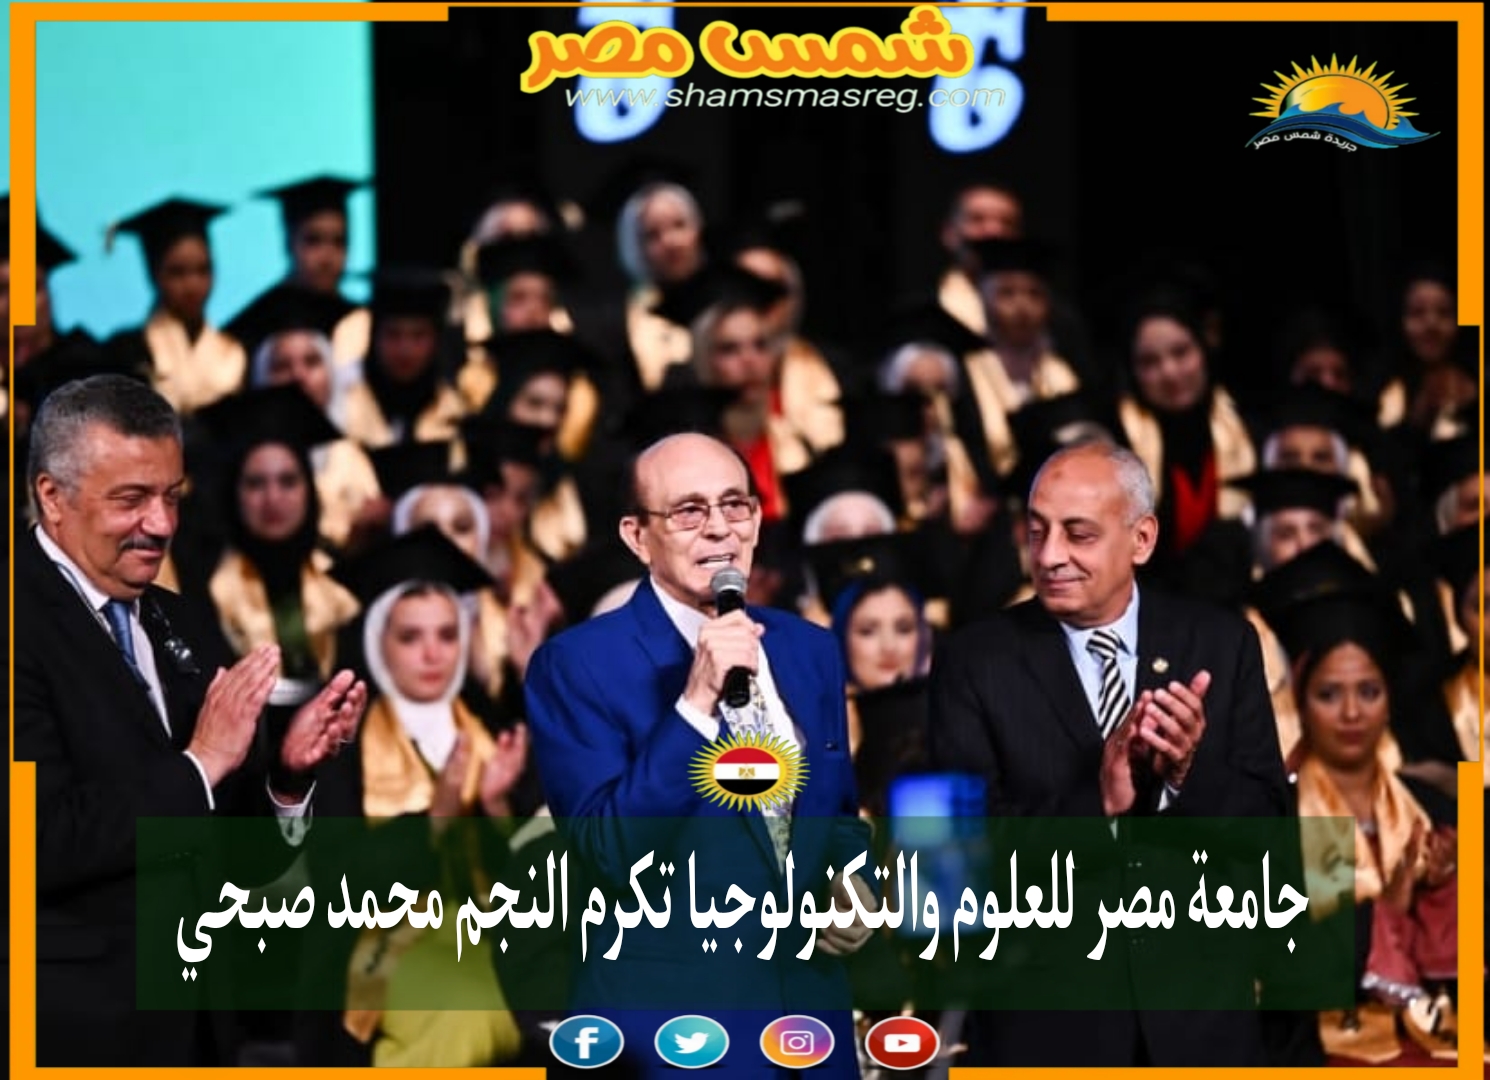 جامعة مصر للعلوم والتكنولوجيا تكرم النجم محمد صبحي